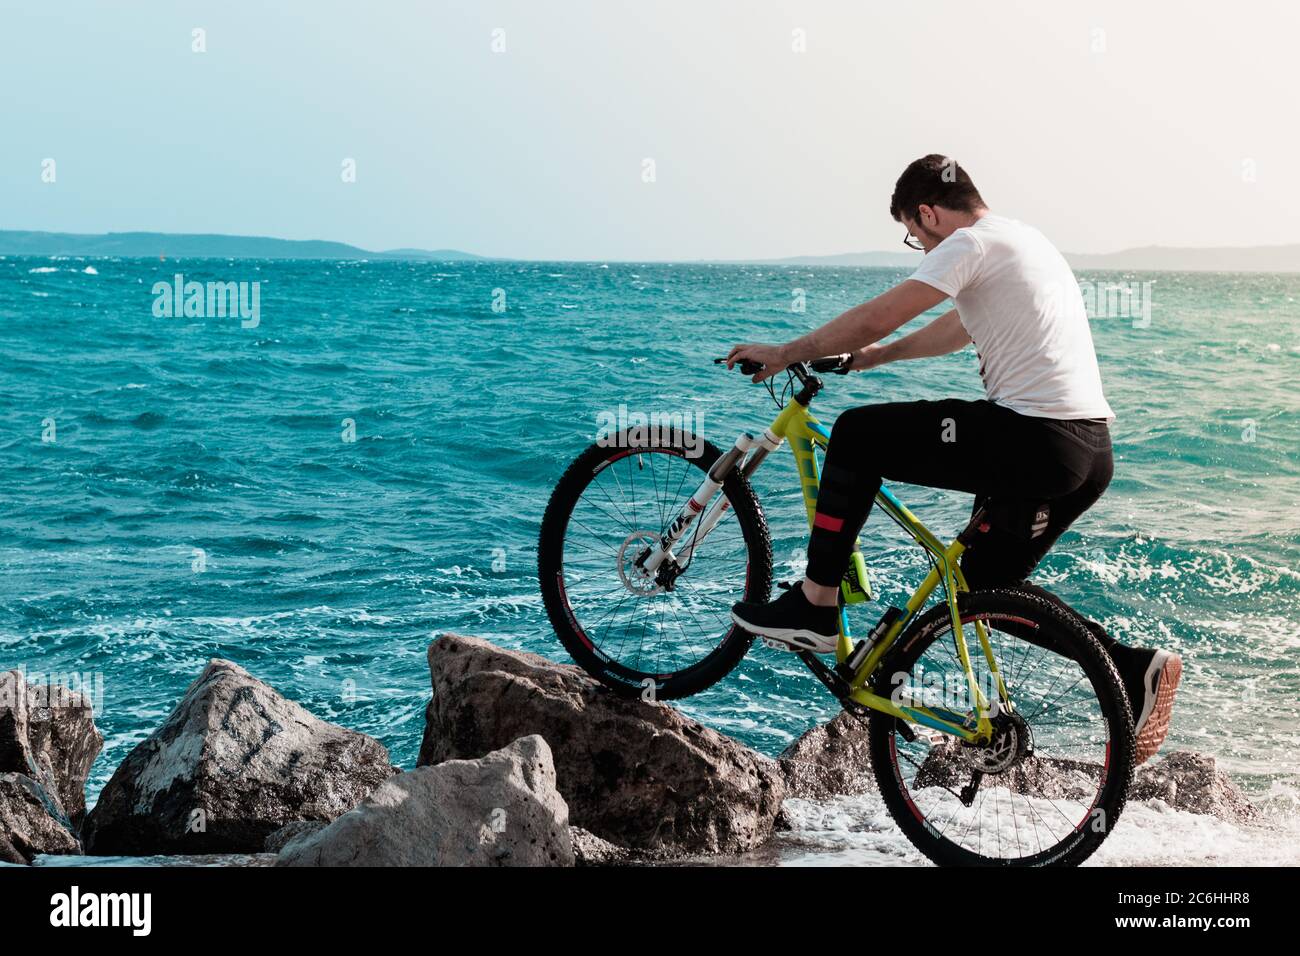 Split,Croacia Mayo 2020 joven de pie en la orilla con una bicicleta, se inclinó sobre una roca de playa. Olas golpeando la orilla en un día ventoso, salpicándolo Foto de stock